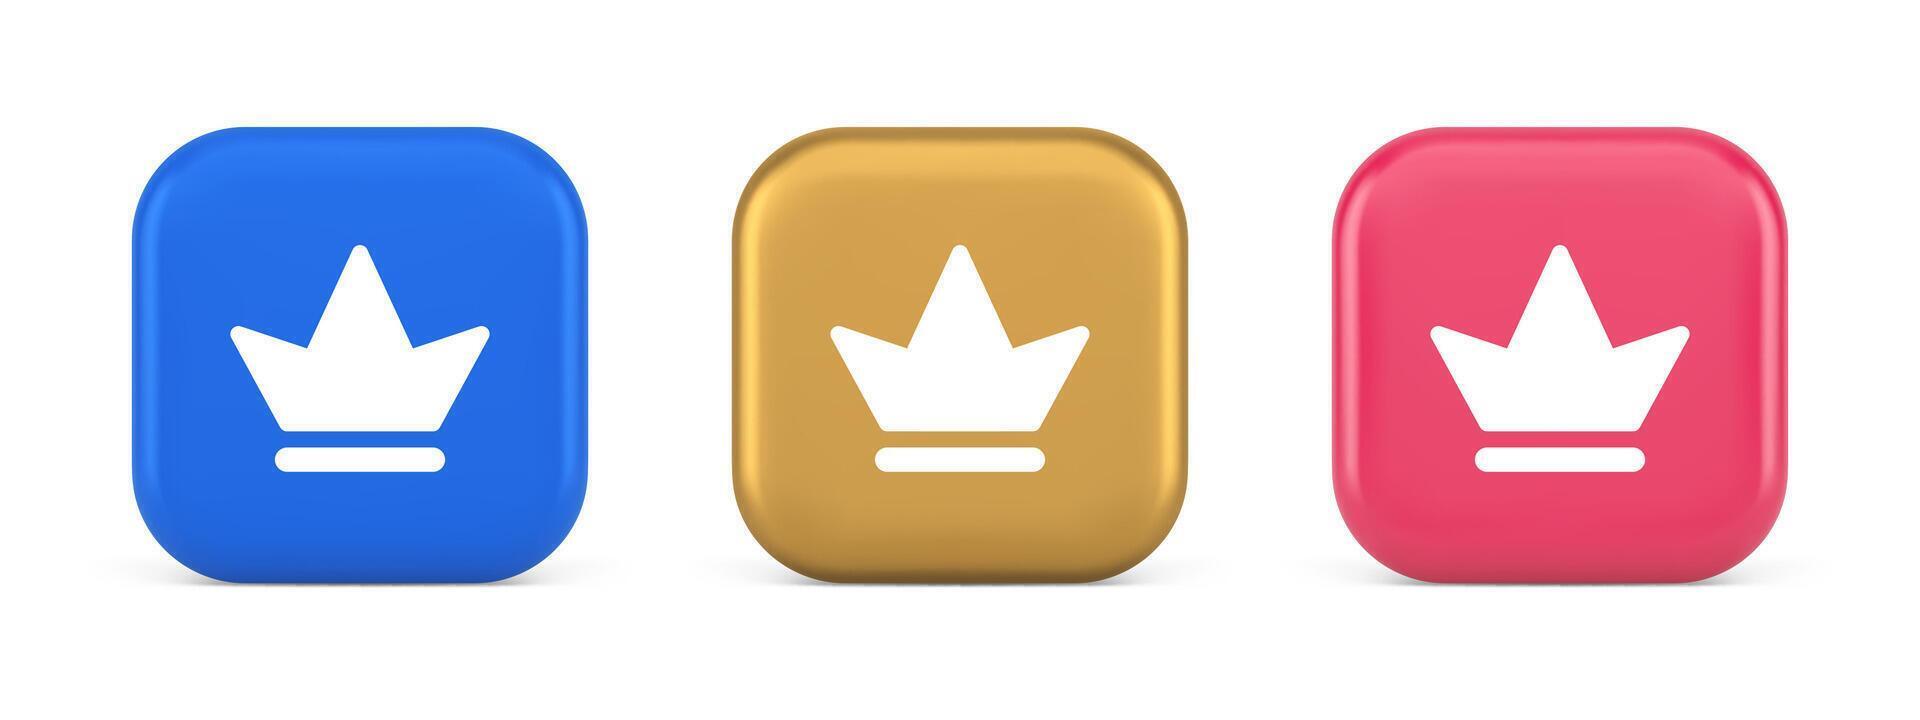 couronne bouton Royal médiéval Roi reine coiffure la toile app 3d réaliste icône vecteur